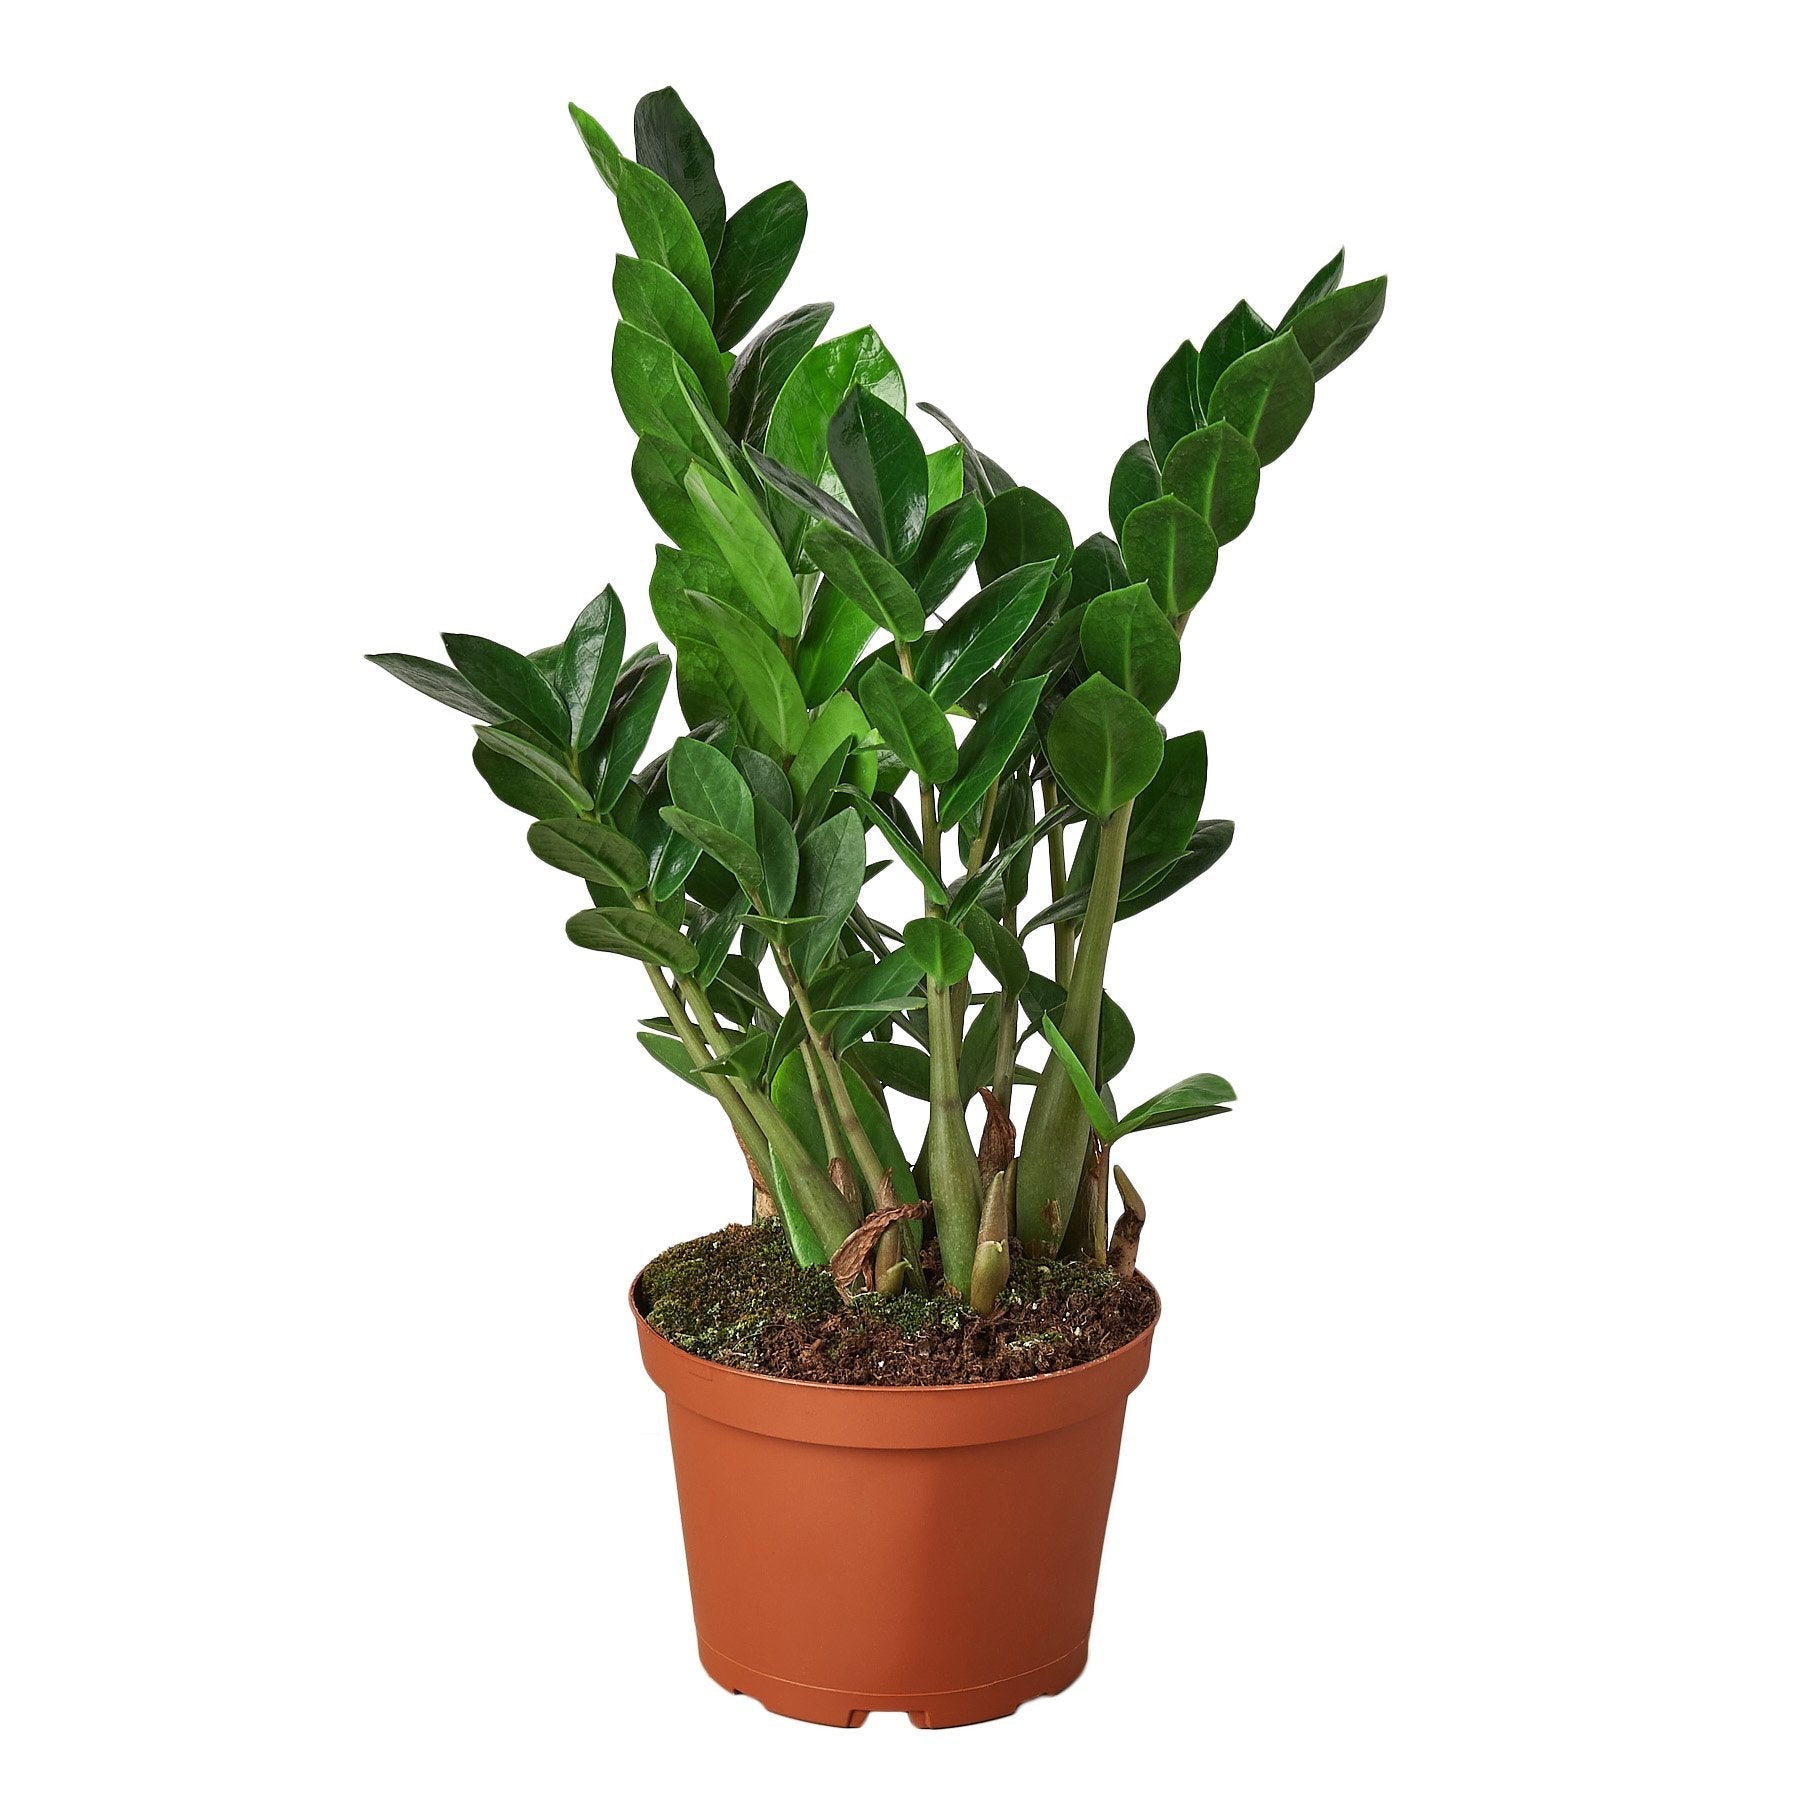 Zamioculcas Zamiifolia ZZ - 6" Pot -  NURSERY POT ONLY - One Beleaf Away Plant Studio